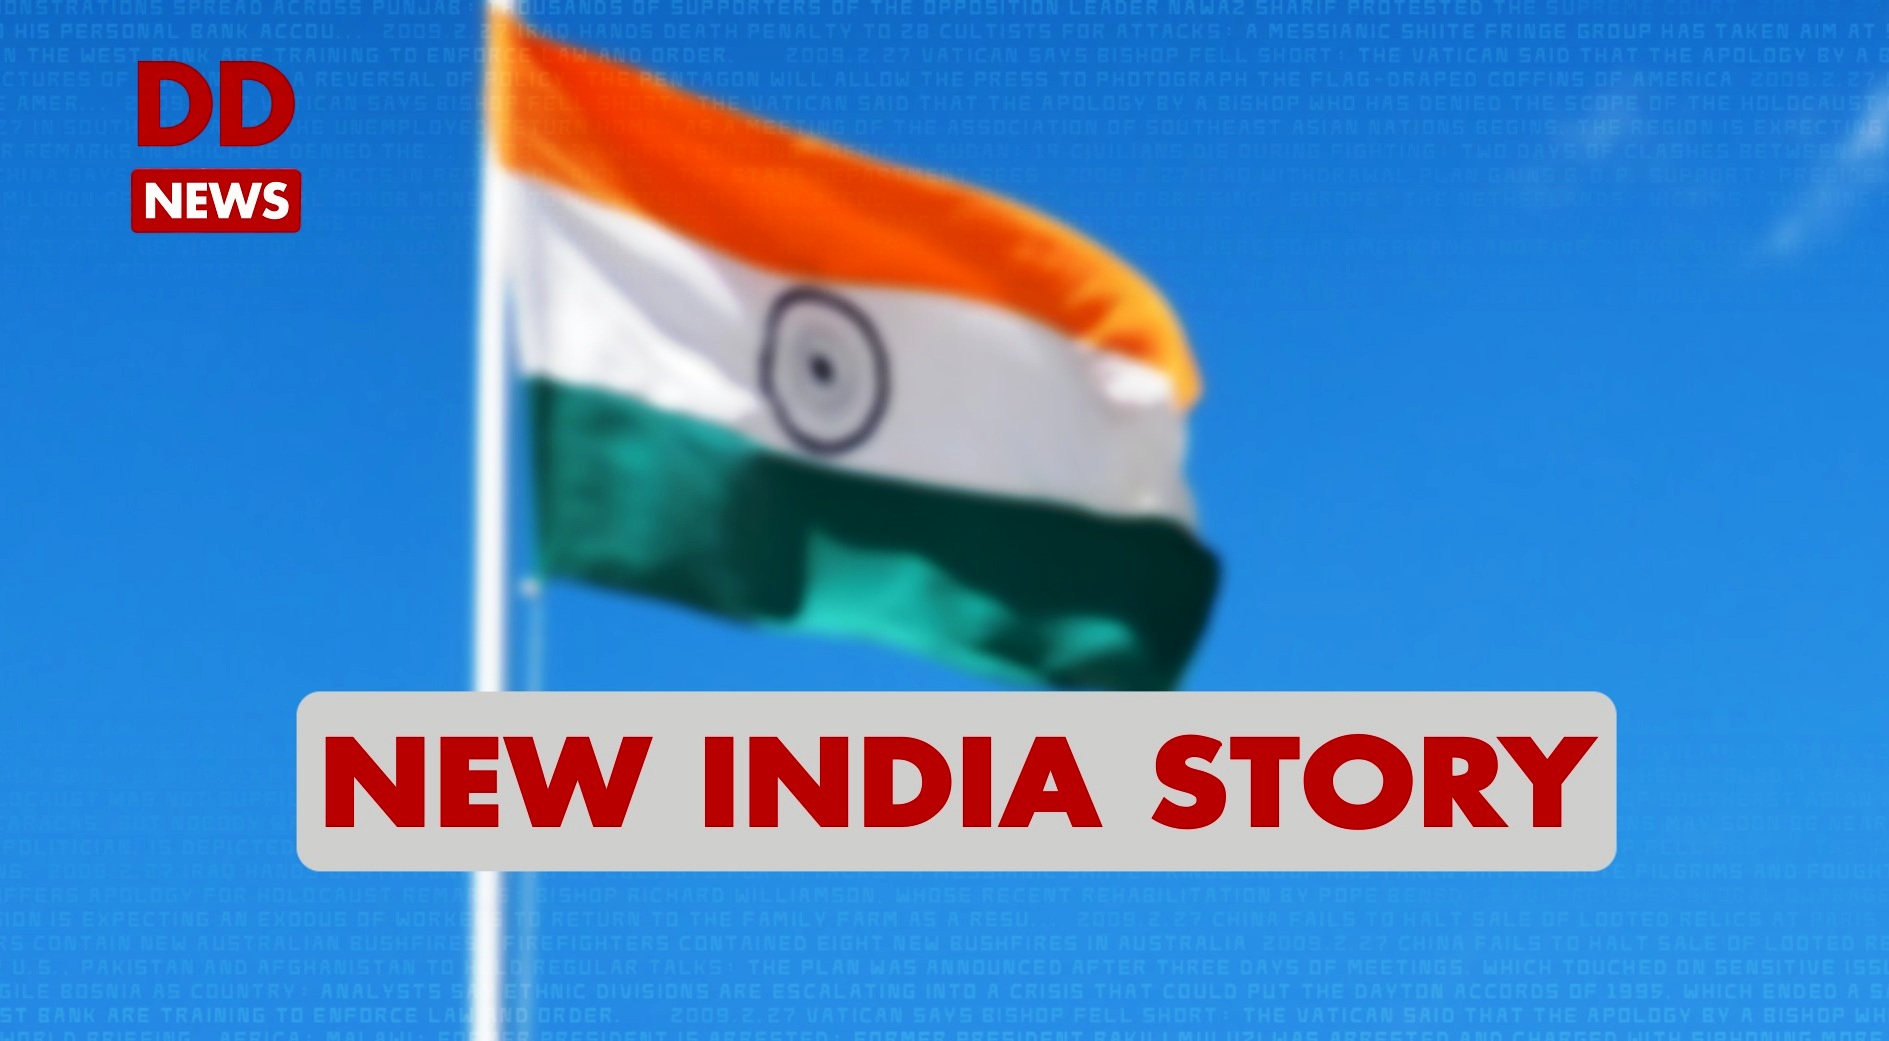 New India Story / Telangana / Yadadri Bhuvanagiri / Pradhan Mantri Gramin Sadak Yojna